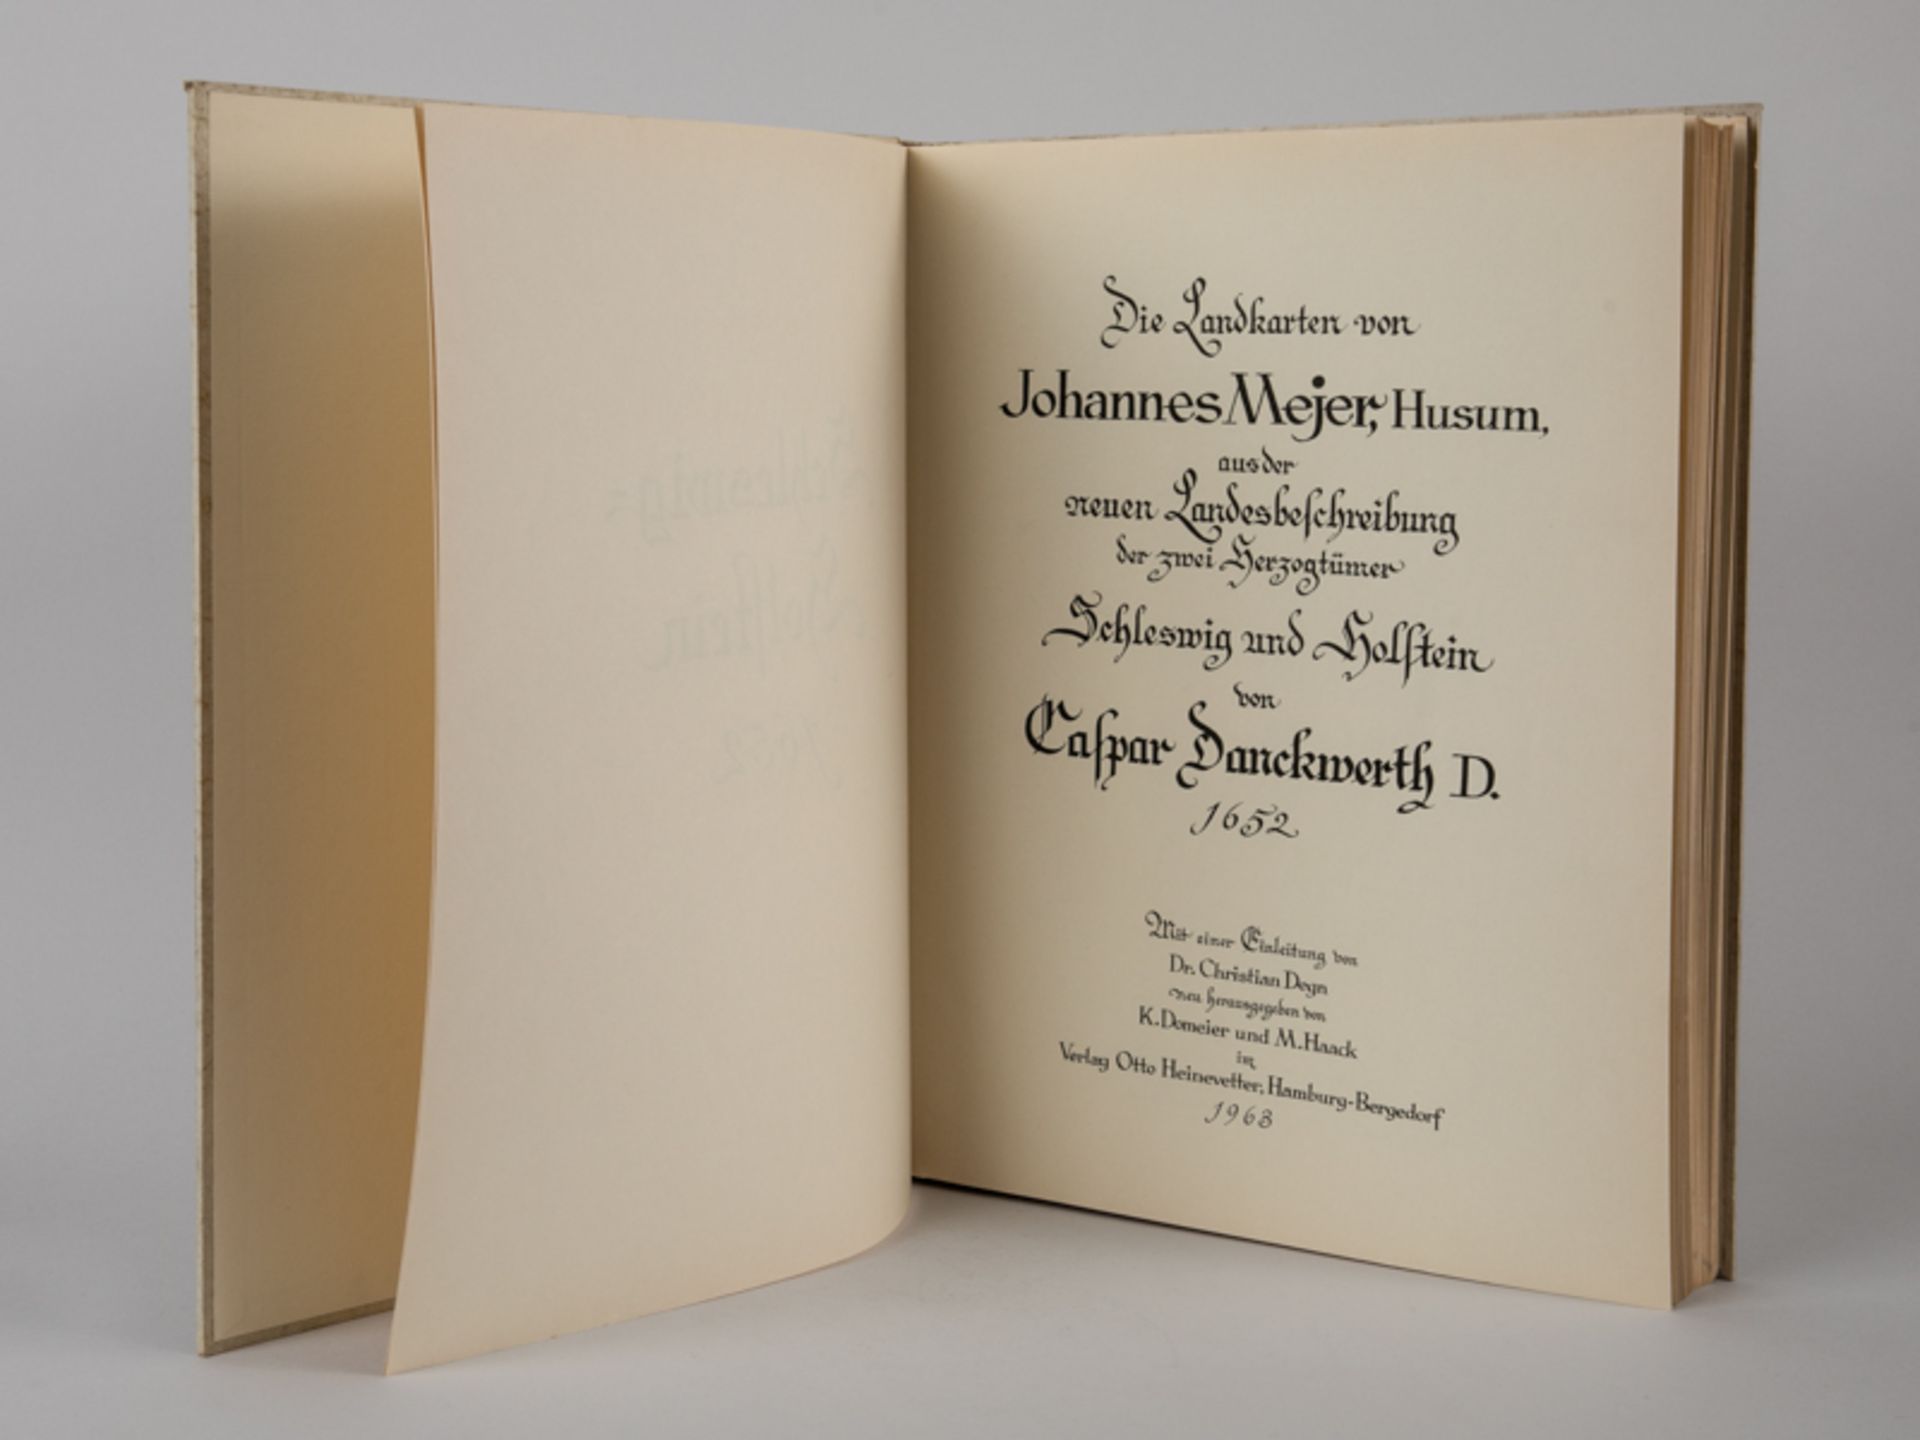 Faksimile-Buchausgabe "Landkarten Schleswig u. Holstein", nach C. Danckwerth, Hmbg.-Bergedorf, 1963